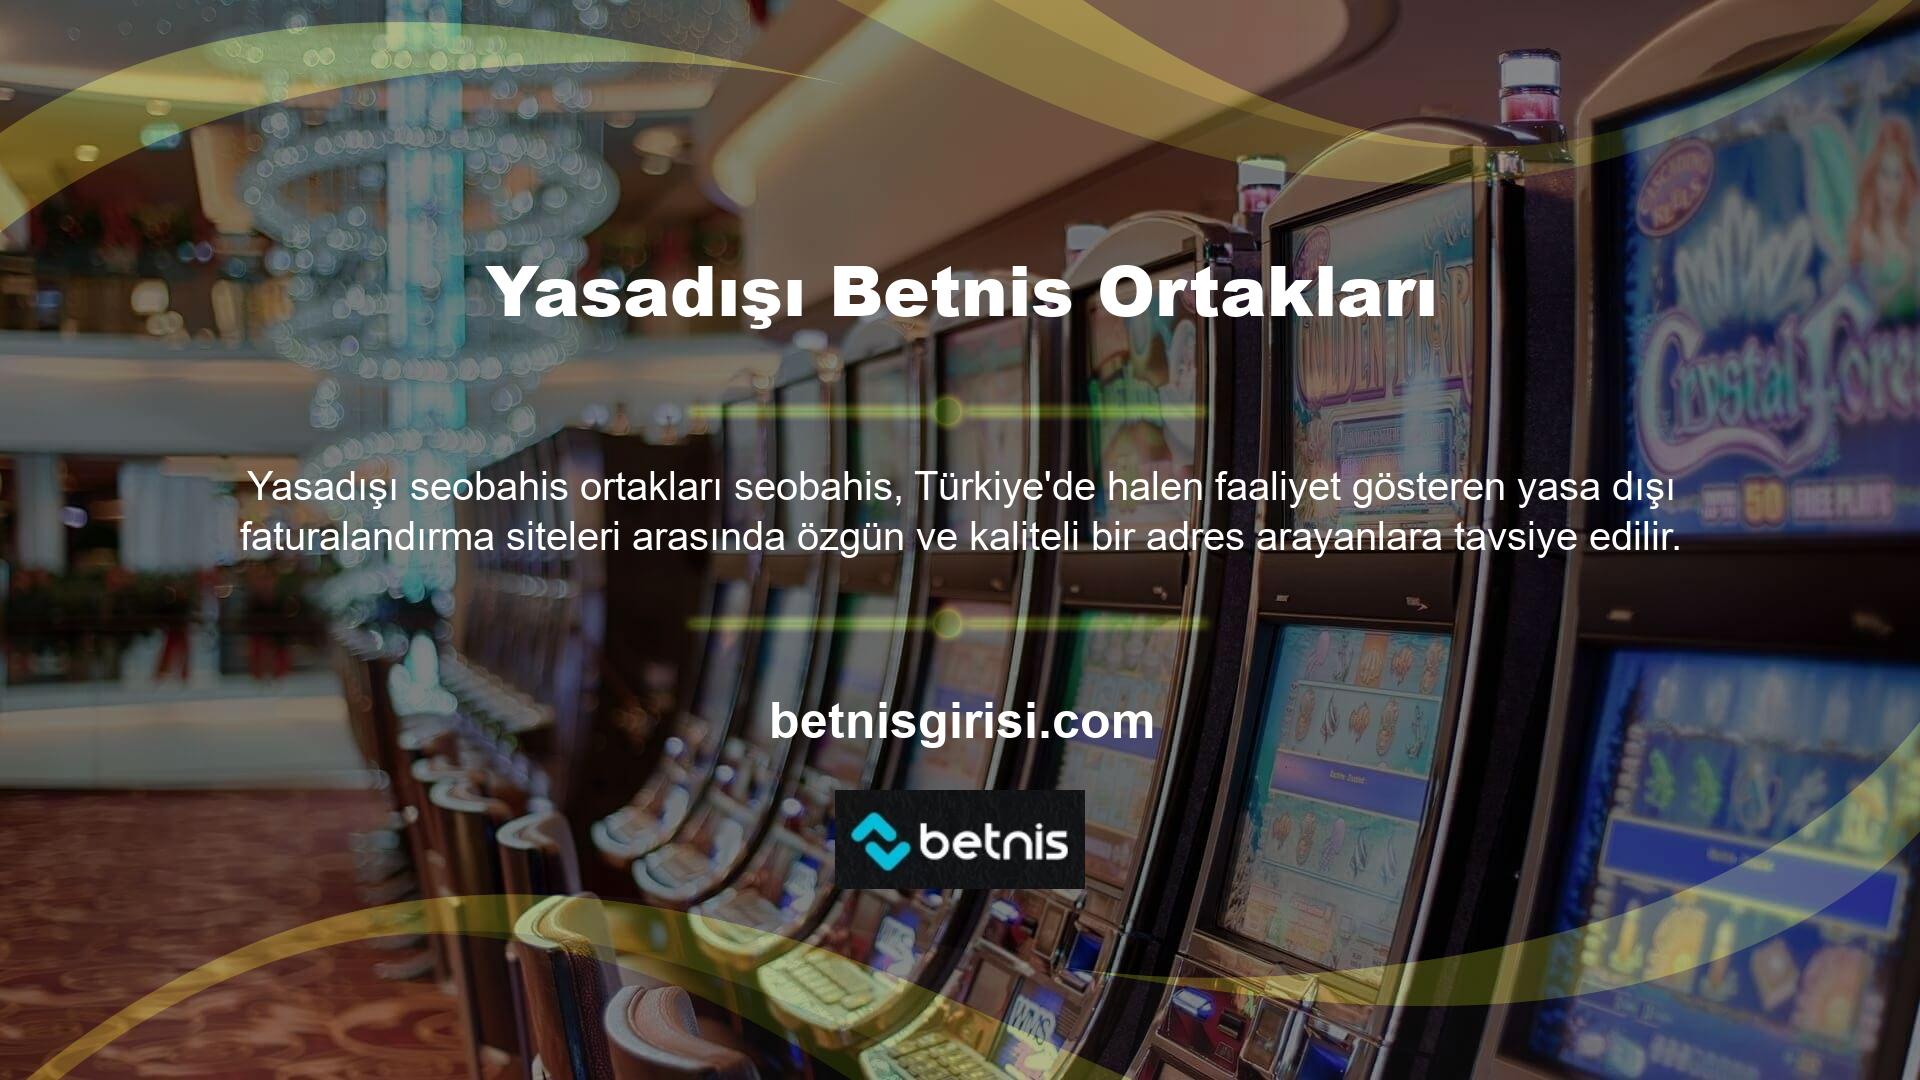 Betnis Üyelik Süreci Hakkında Müşteri tabanımız büyüdükçe, çevrimiçi casino web sitesi Casino Betnis, çok çeşitli çevrimiçi casino oyunlarını tek bir yerde bir araya getiriyor